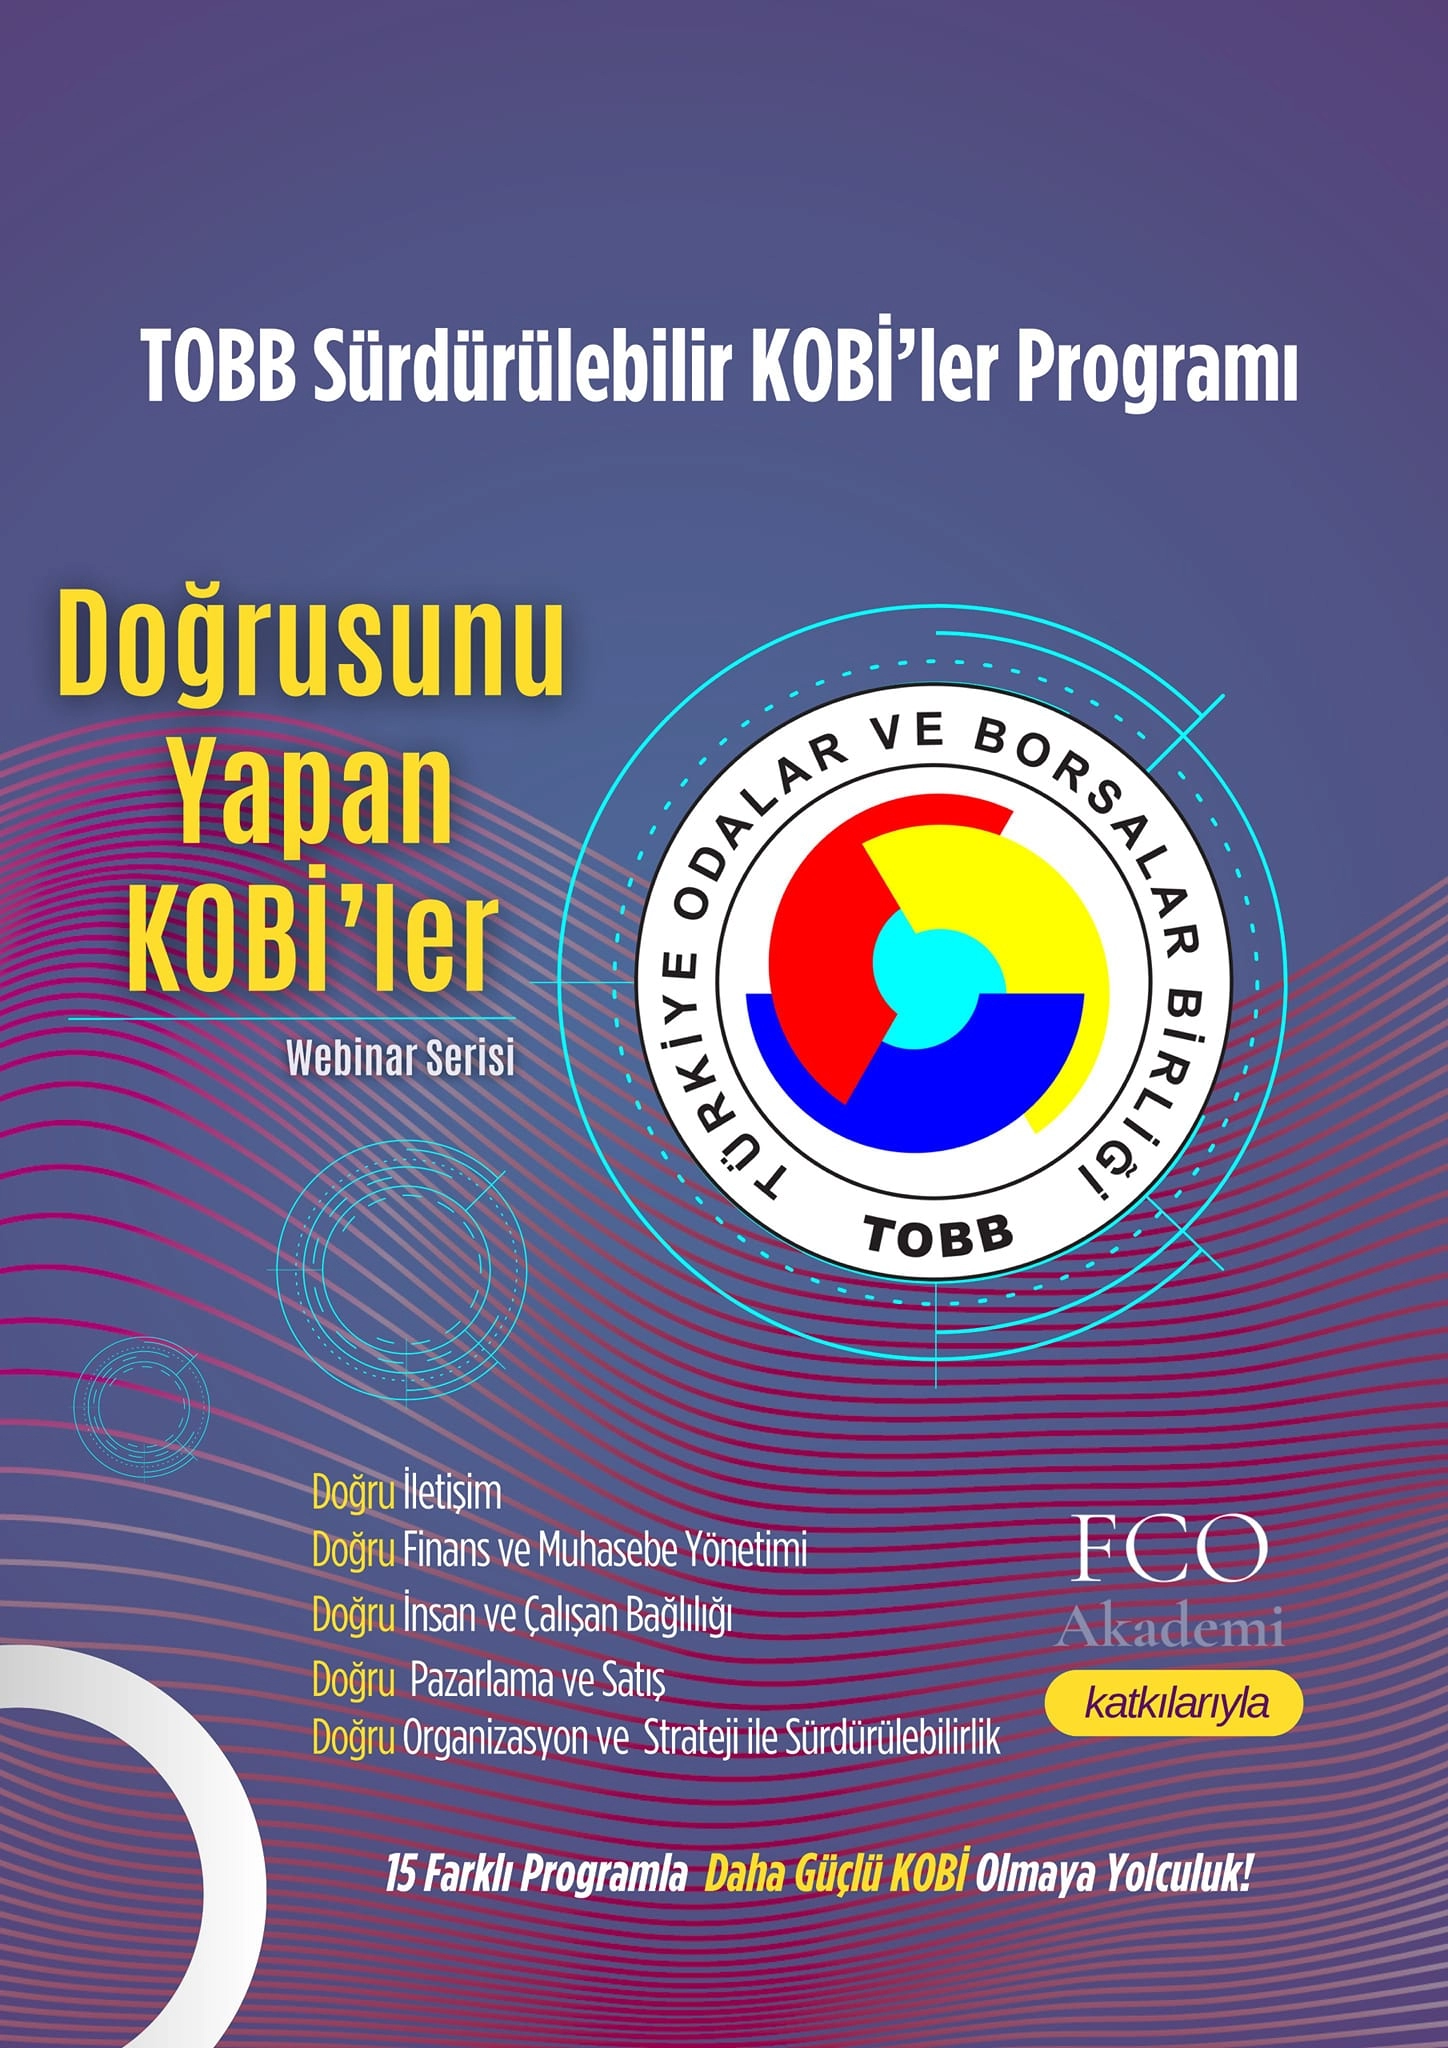 TOBB ile FCO Akademi iş birliğinde gerçekleştirilecek olan Doğrusunu Yapan KOBİ'ler Webinar